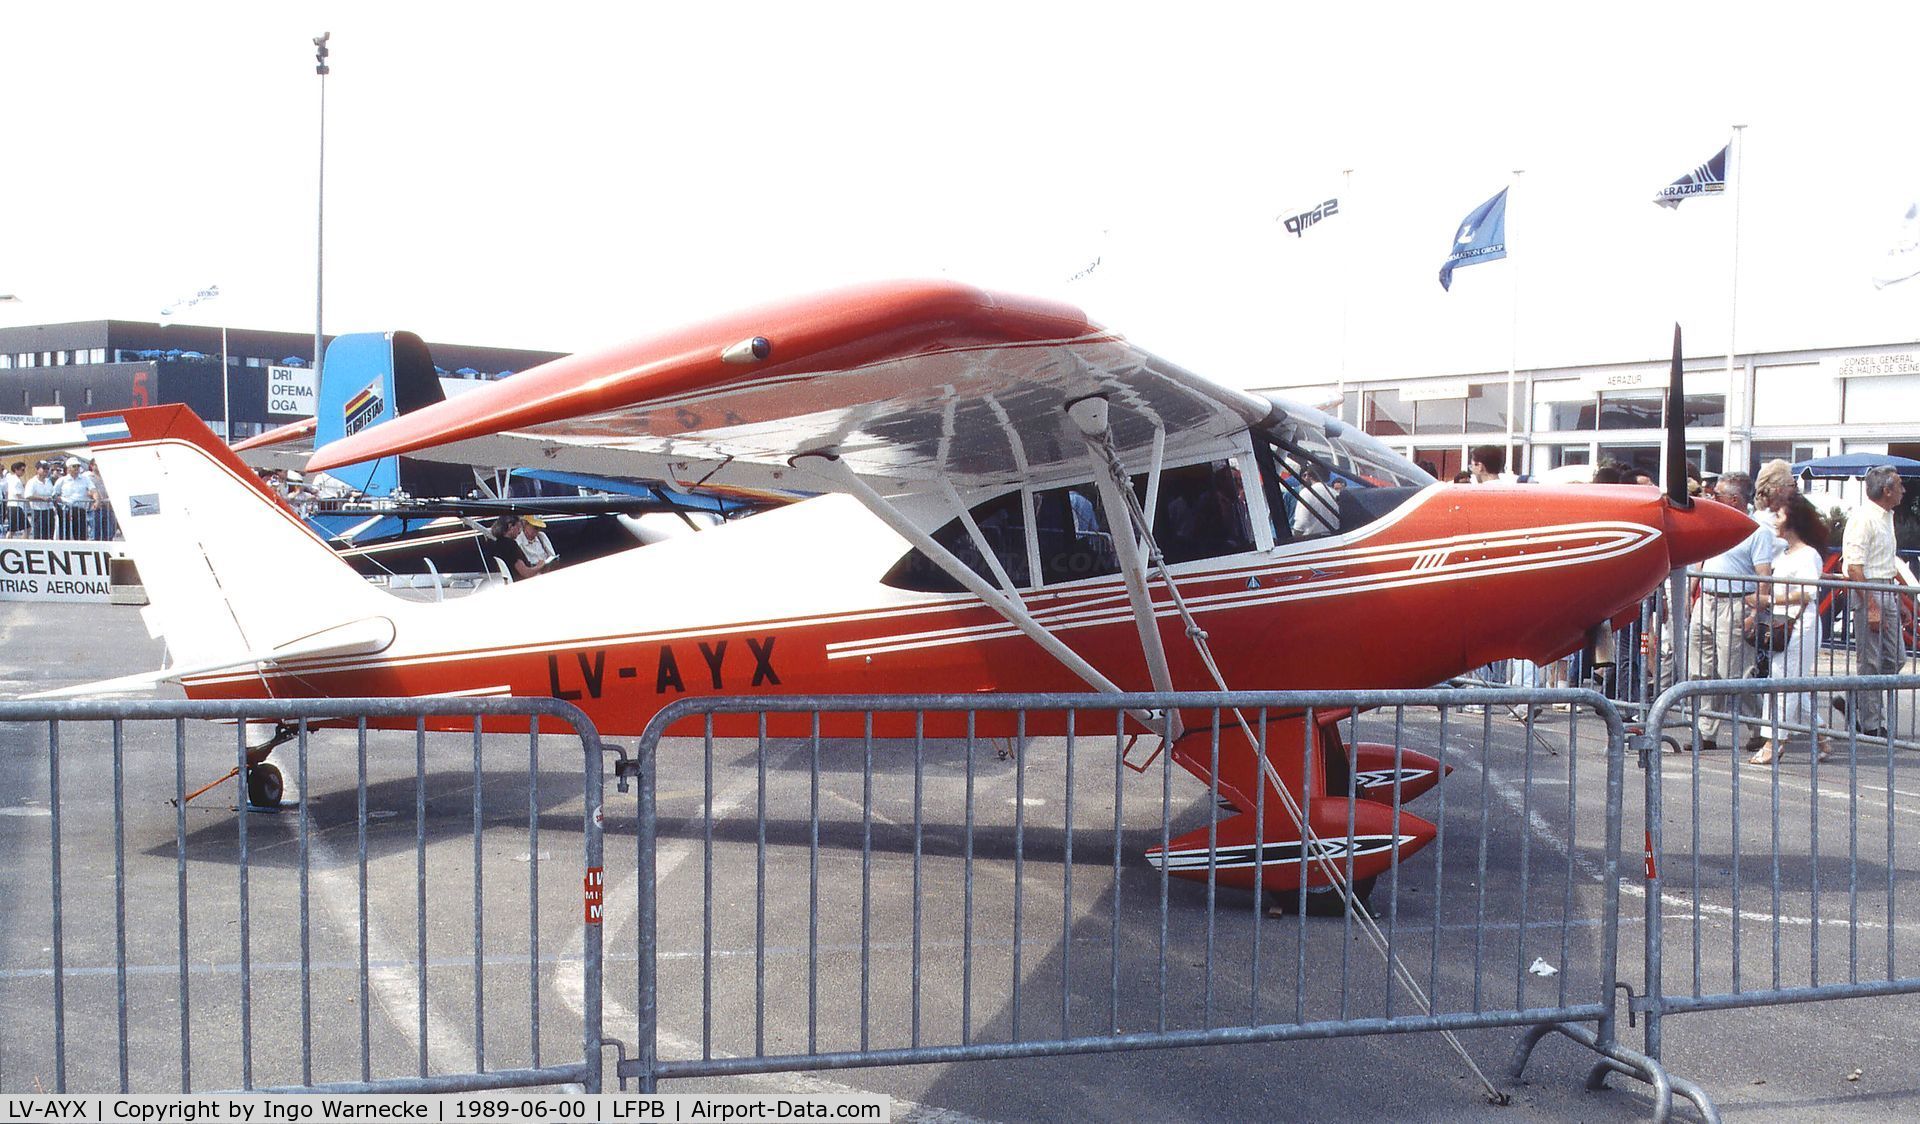 LV-AYX, Aero Boero 115 C/N 074, Aero Boero 115 at the Aerosalon 1989 Paris